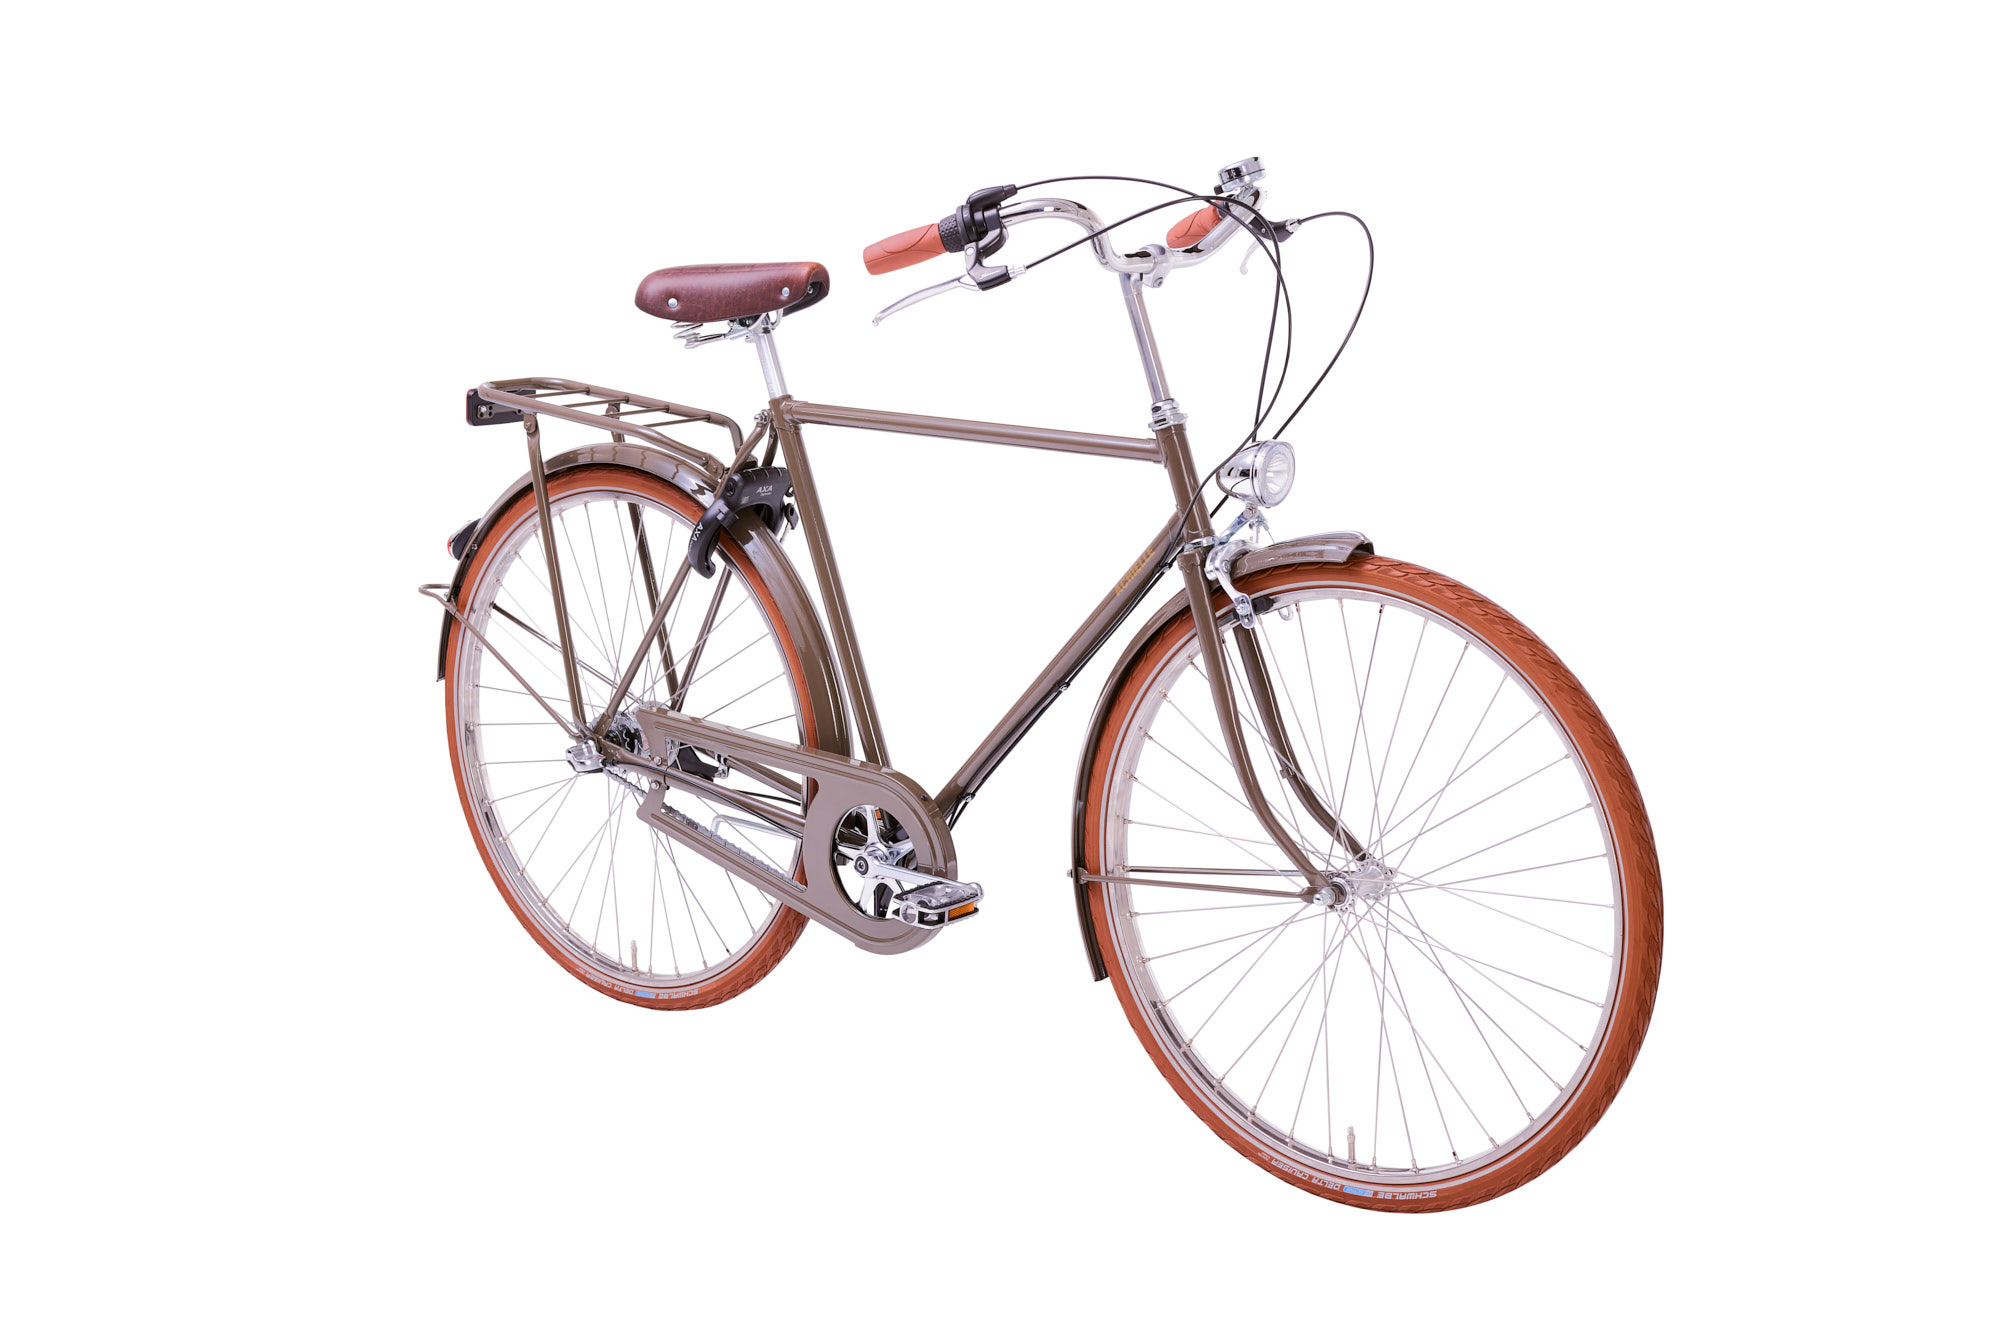 Achielle Babette - Le vélo rétro classique fabrique en Belgique